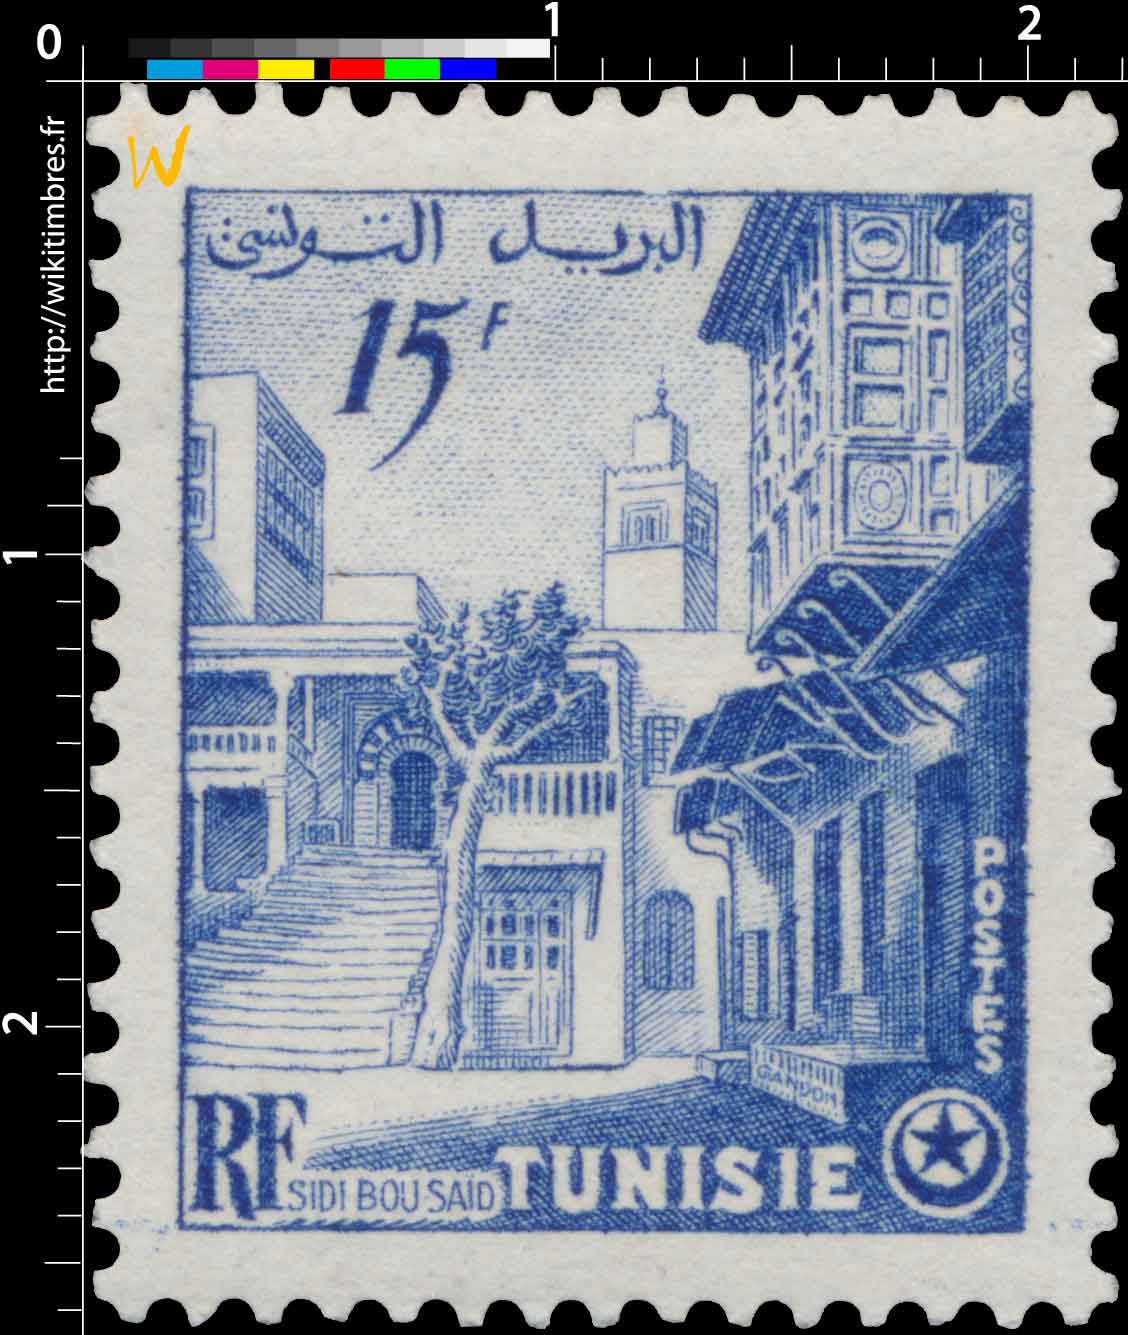 Tunisie - Sidi-Bou-Saïd